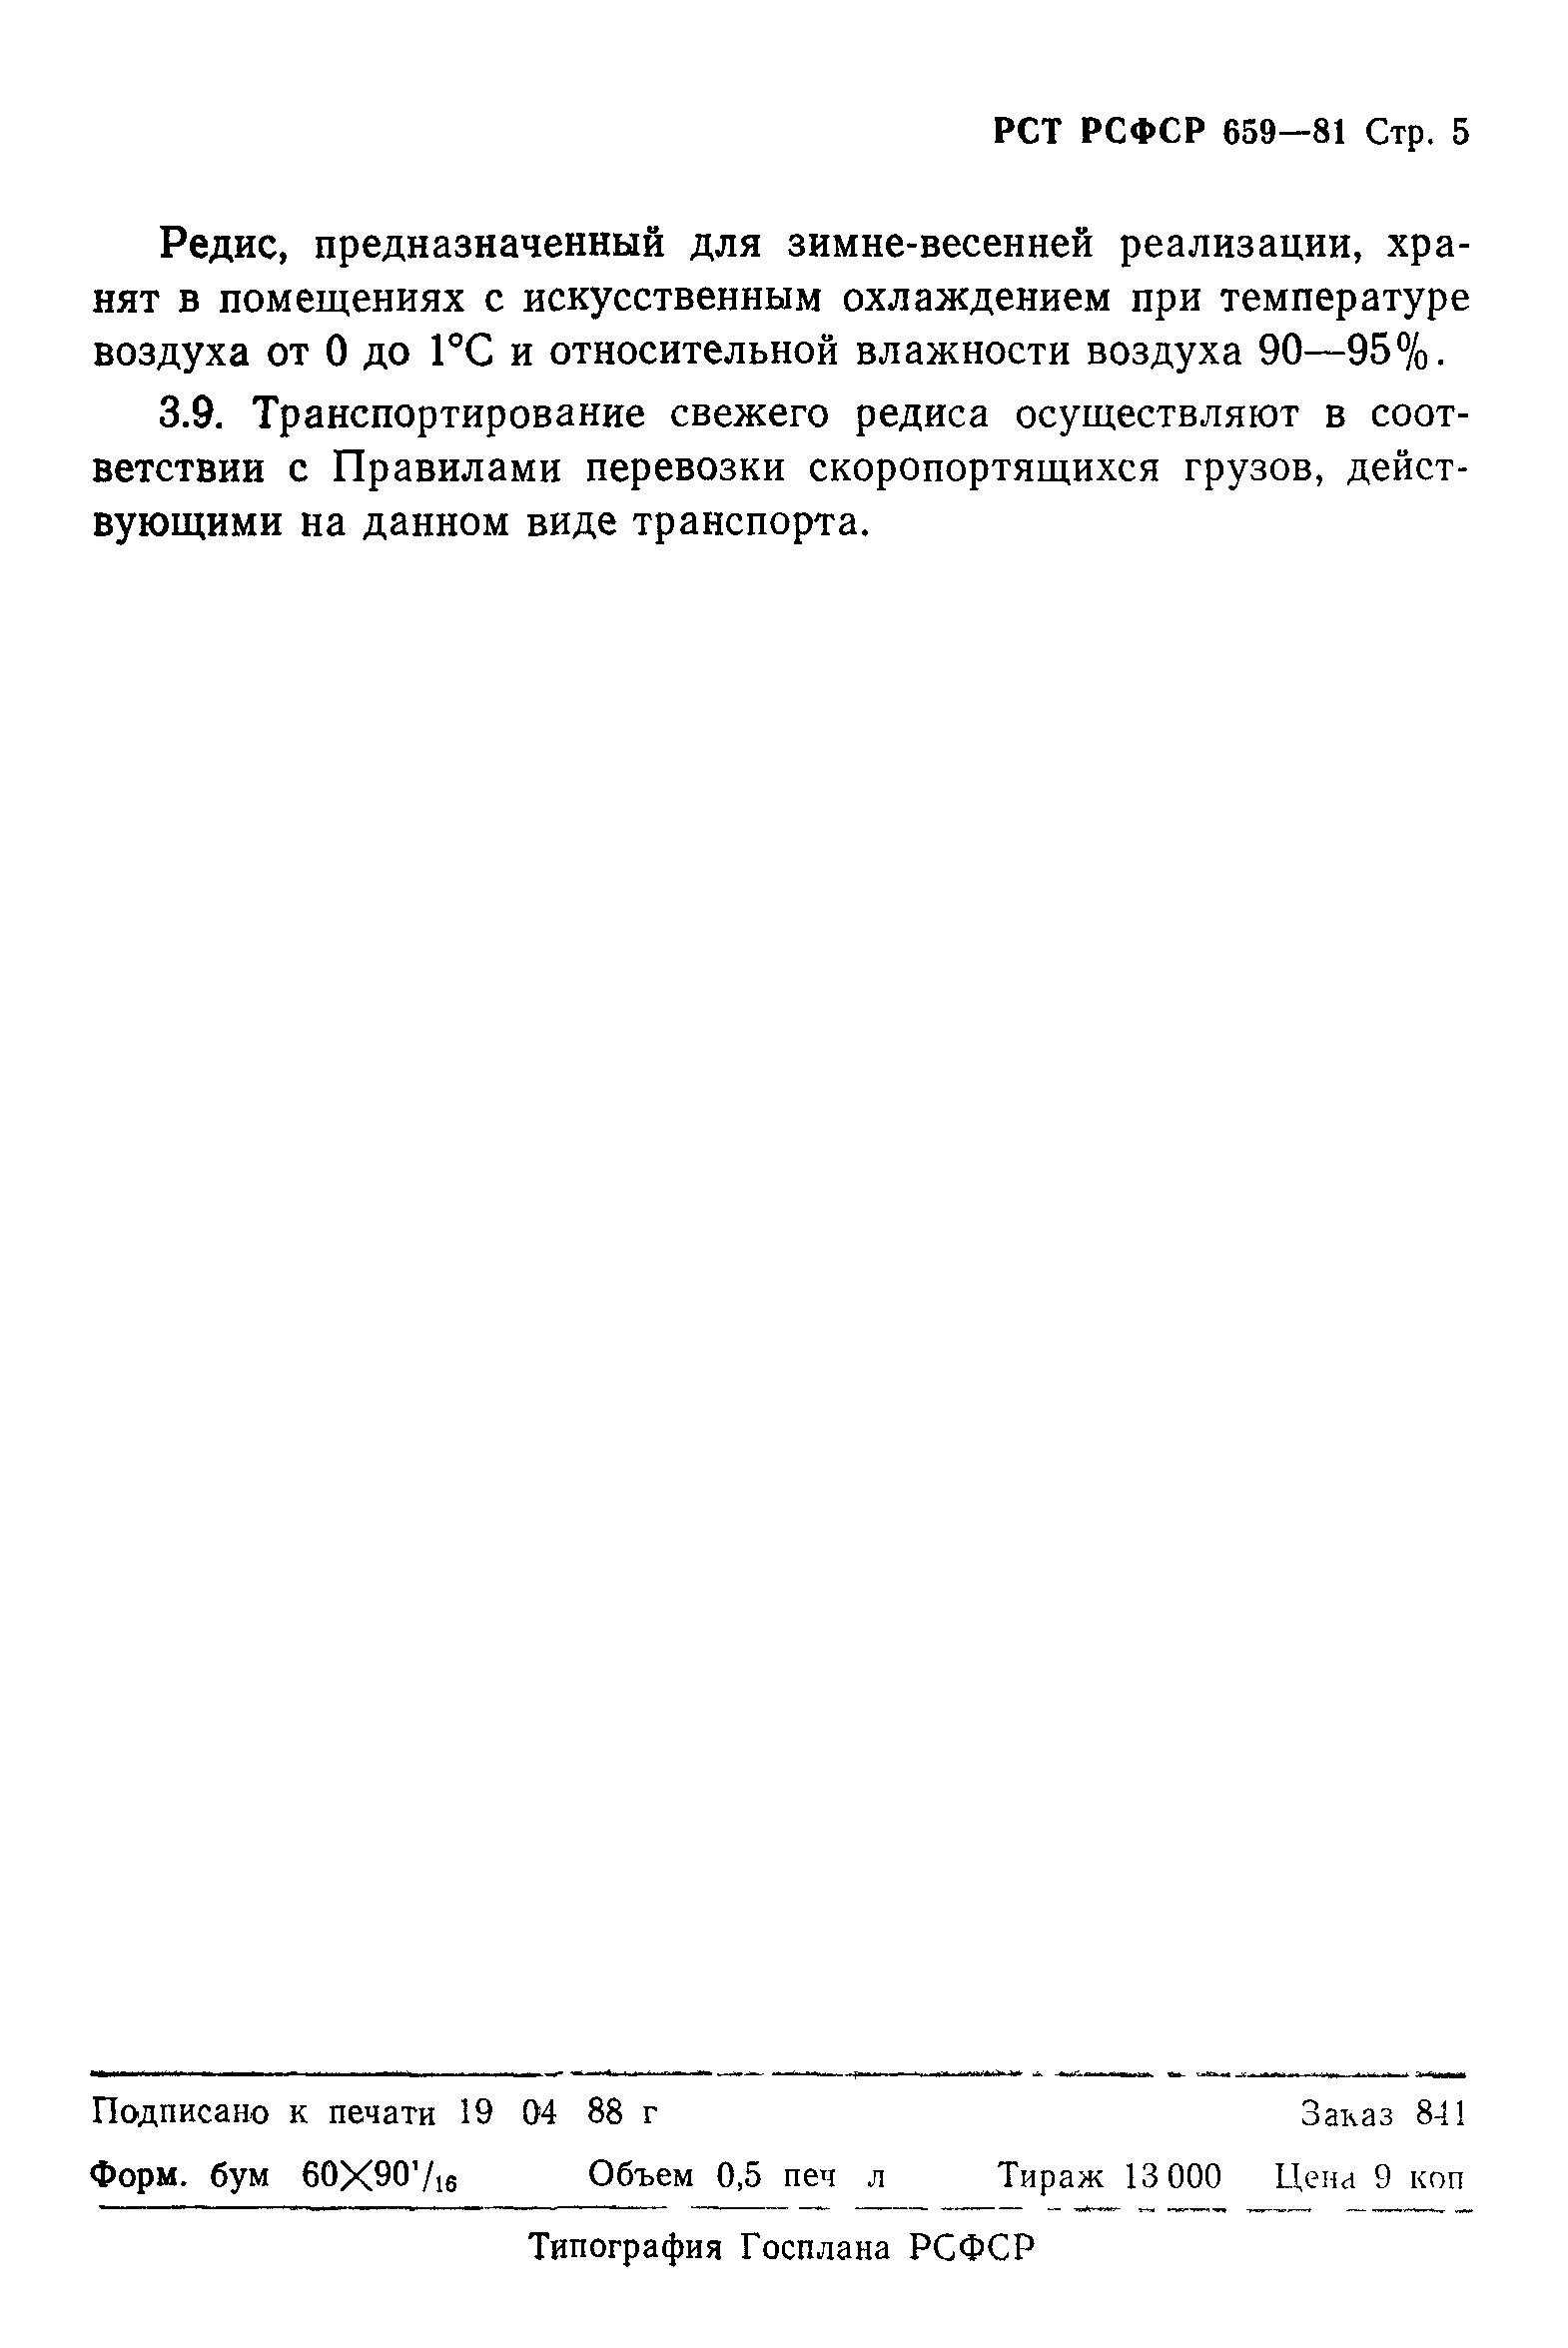 РСТ РСФСР 659-81